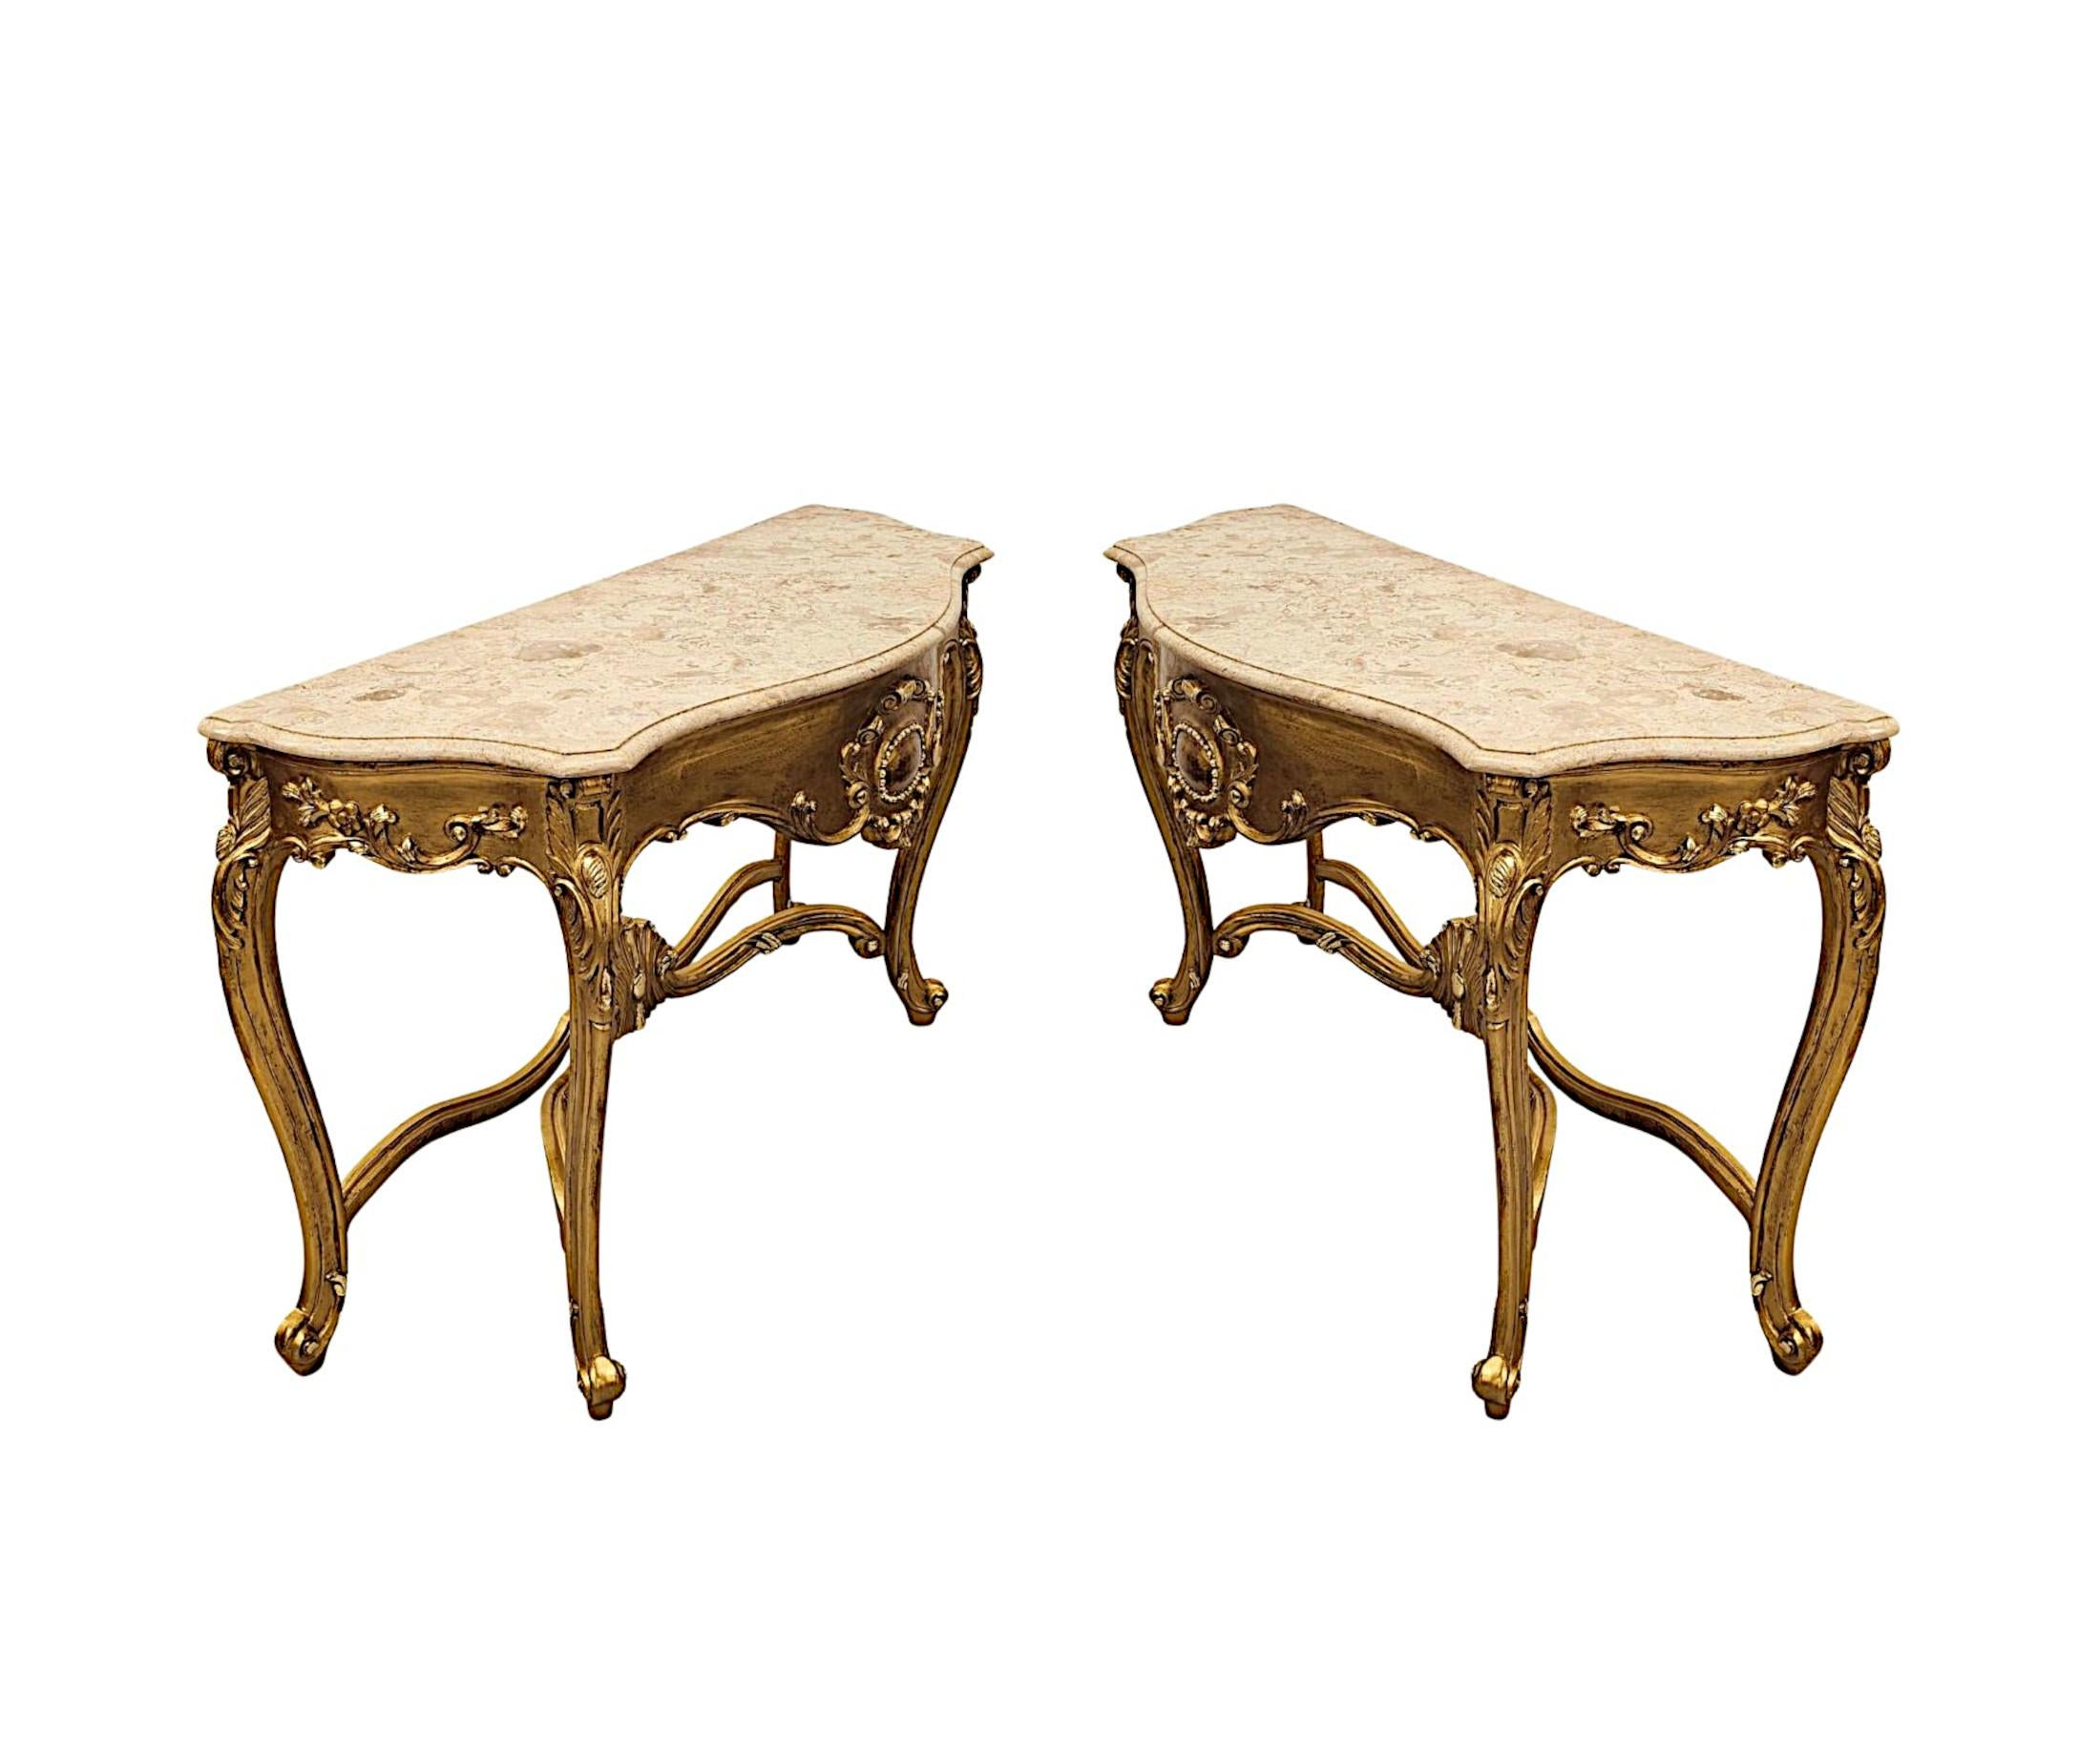 Ein sehr schönes Paar Konsolentische aus vergoldetem Holz mit Marmorplatte aus dem frühen 20. Jahrhundert, hervorragend handgeschnitzt und von außergewöhnlicher Qualität. Die prächtige, geformte cremefarbene und goldene